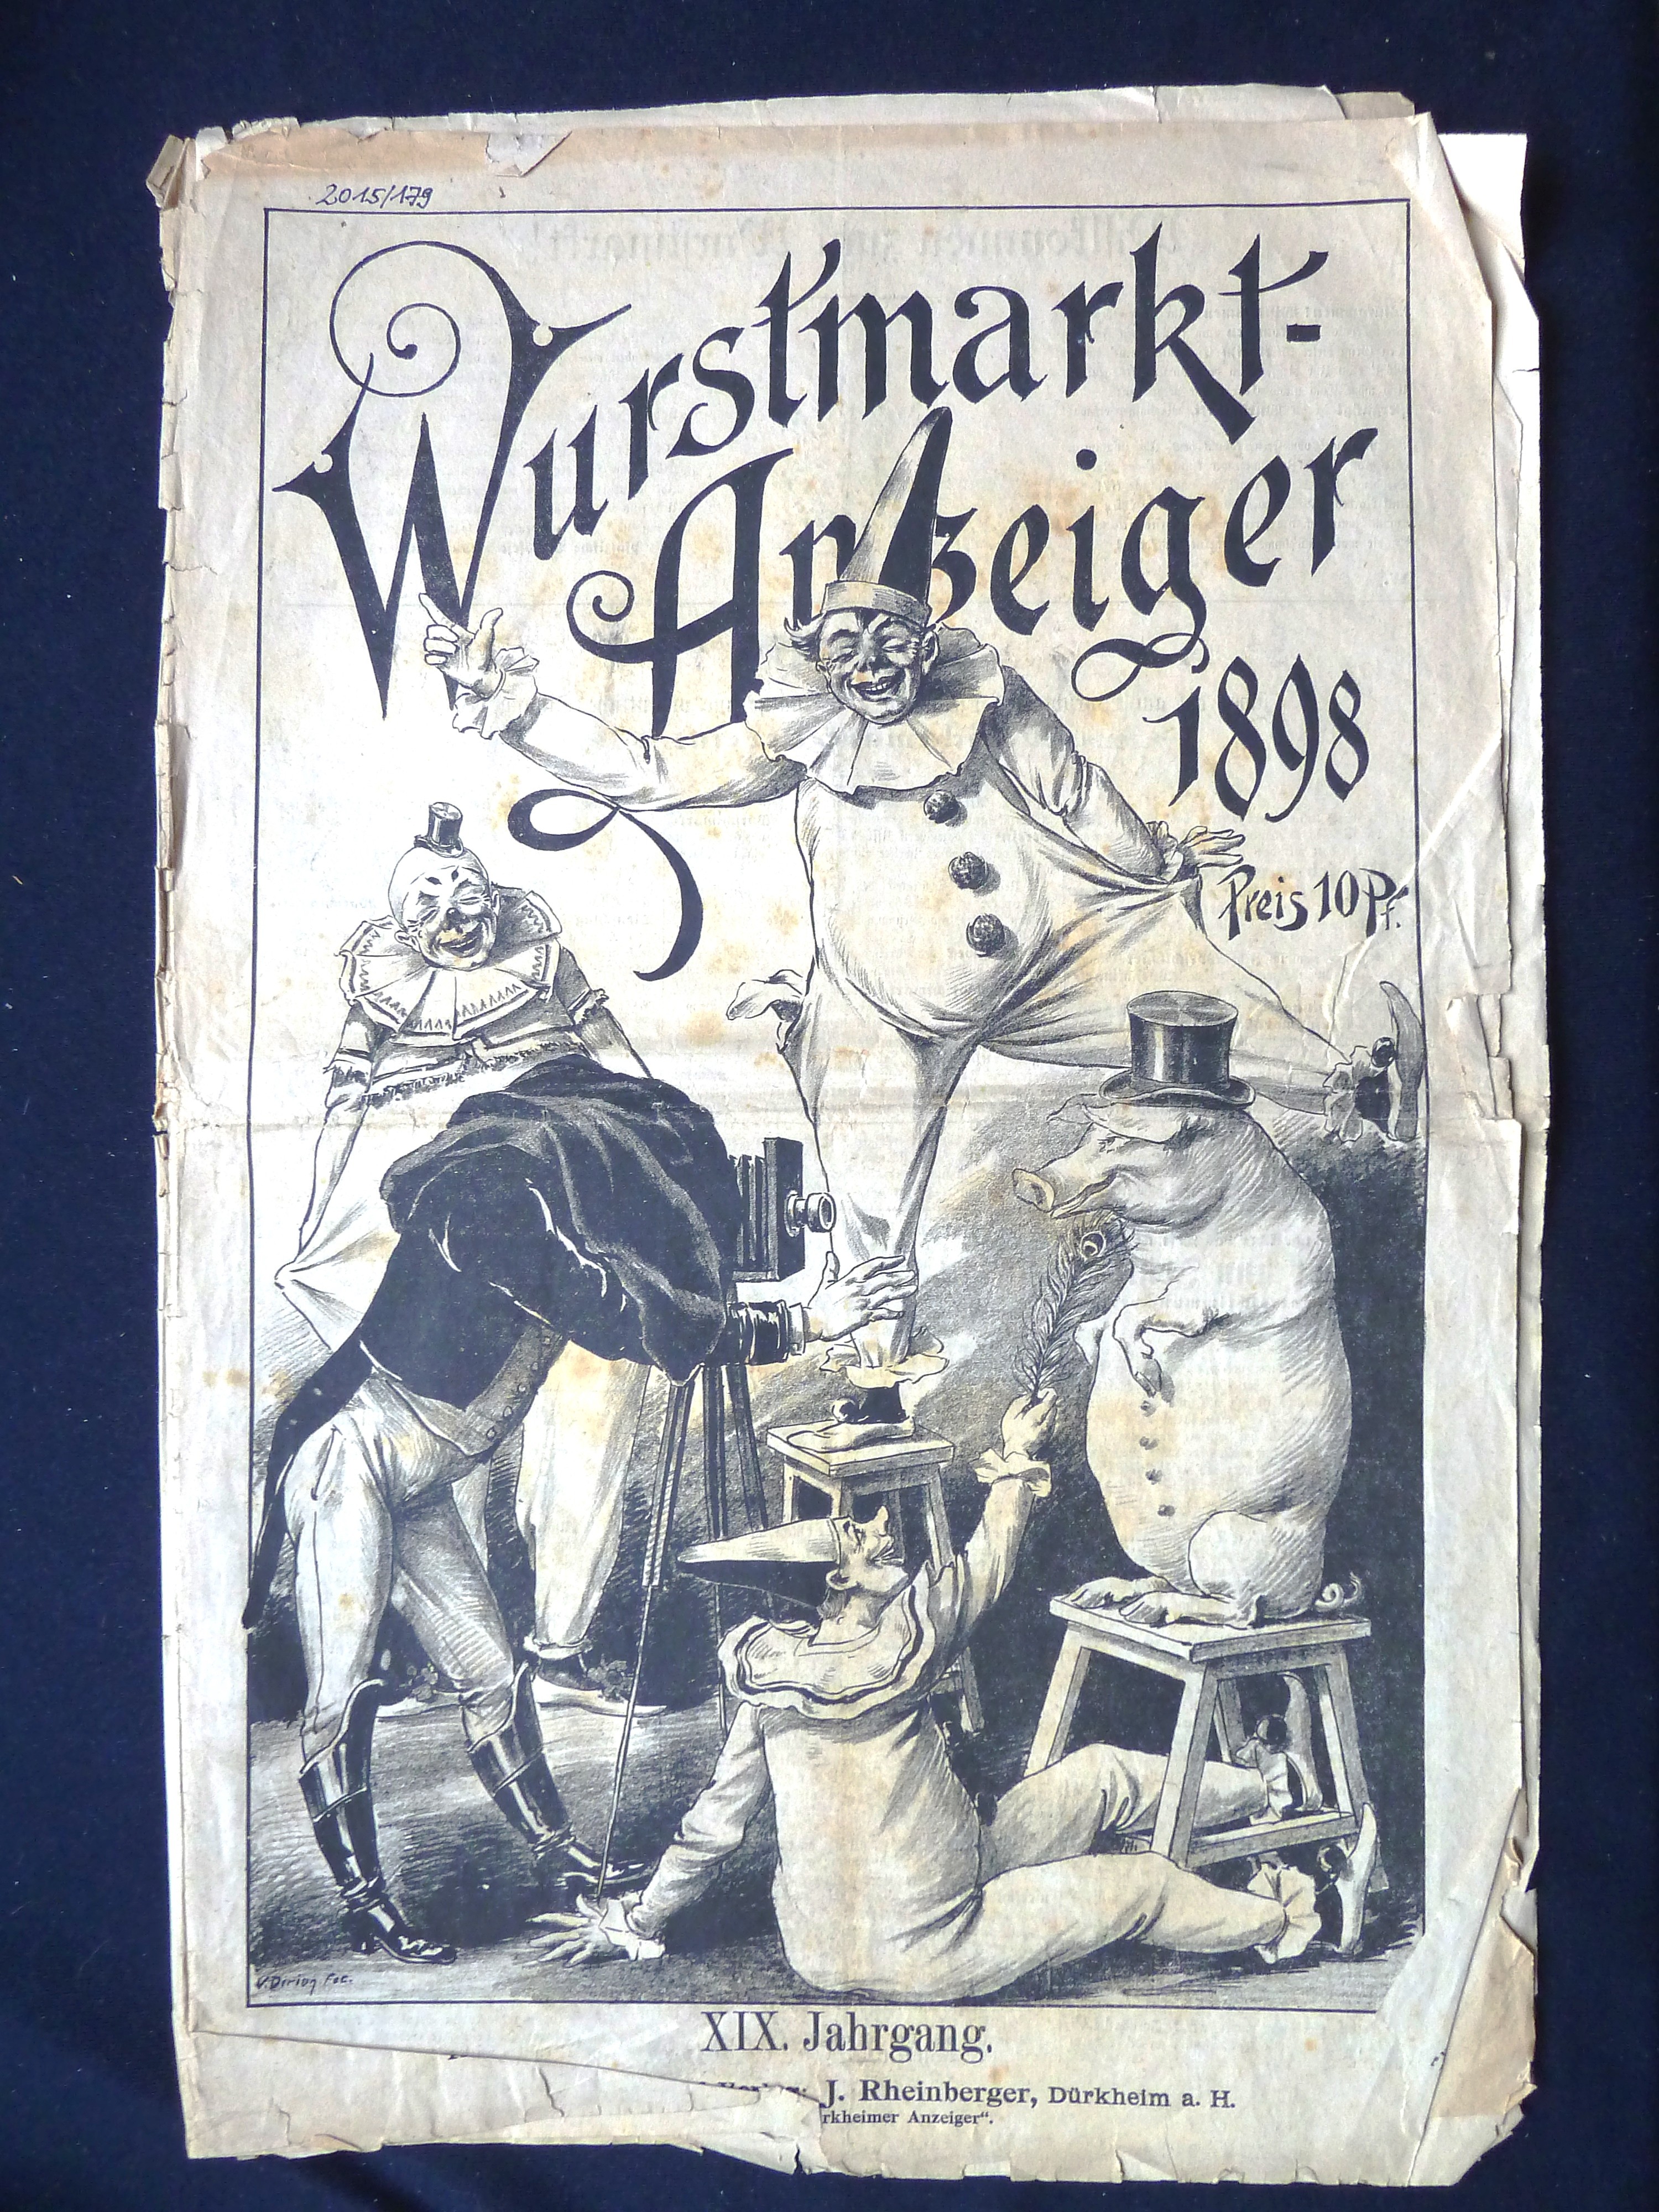 Zeitung; Anzeiger: "Wurstmarkt-Anzeiger"; J. Rheinberger, V. Dirion; Dürkheim a/H.; 1898 (Stadtmuseum Bad Dürkheim, Museumsgesellschaft Bad Dürkheim e.V. CC BY-NC-SA)